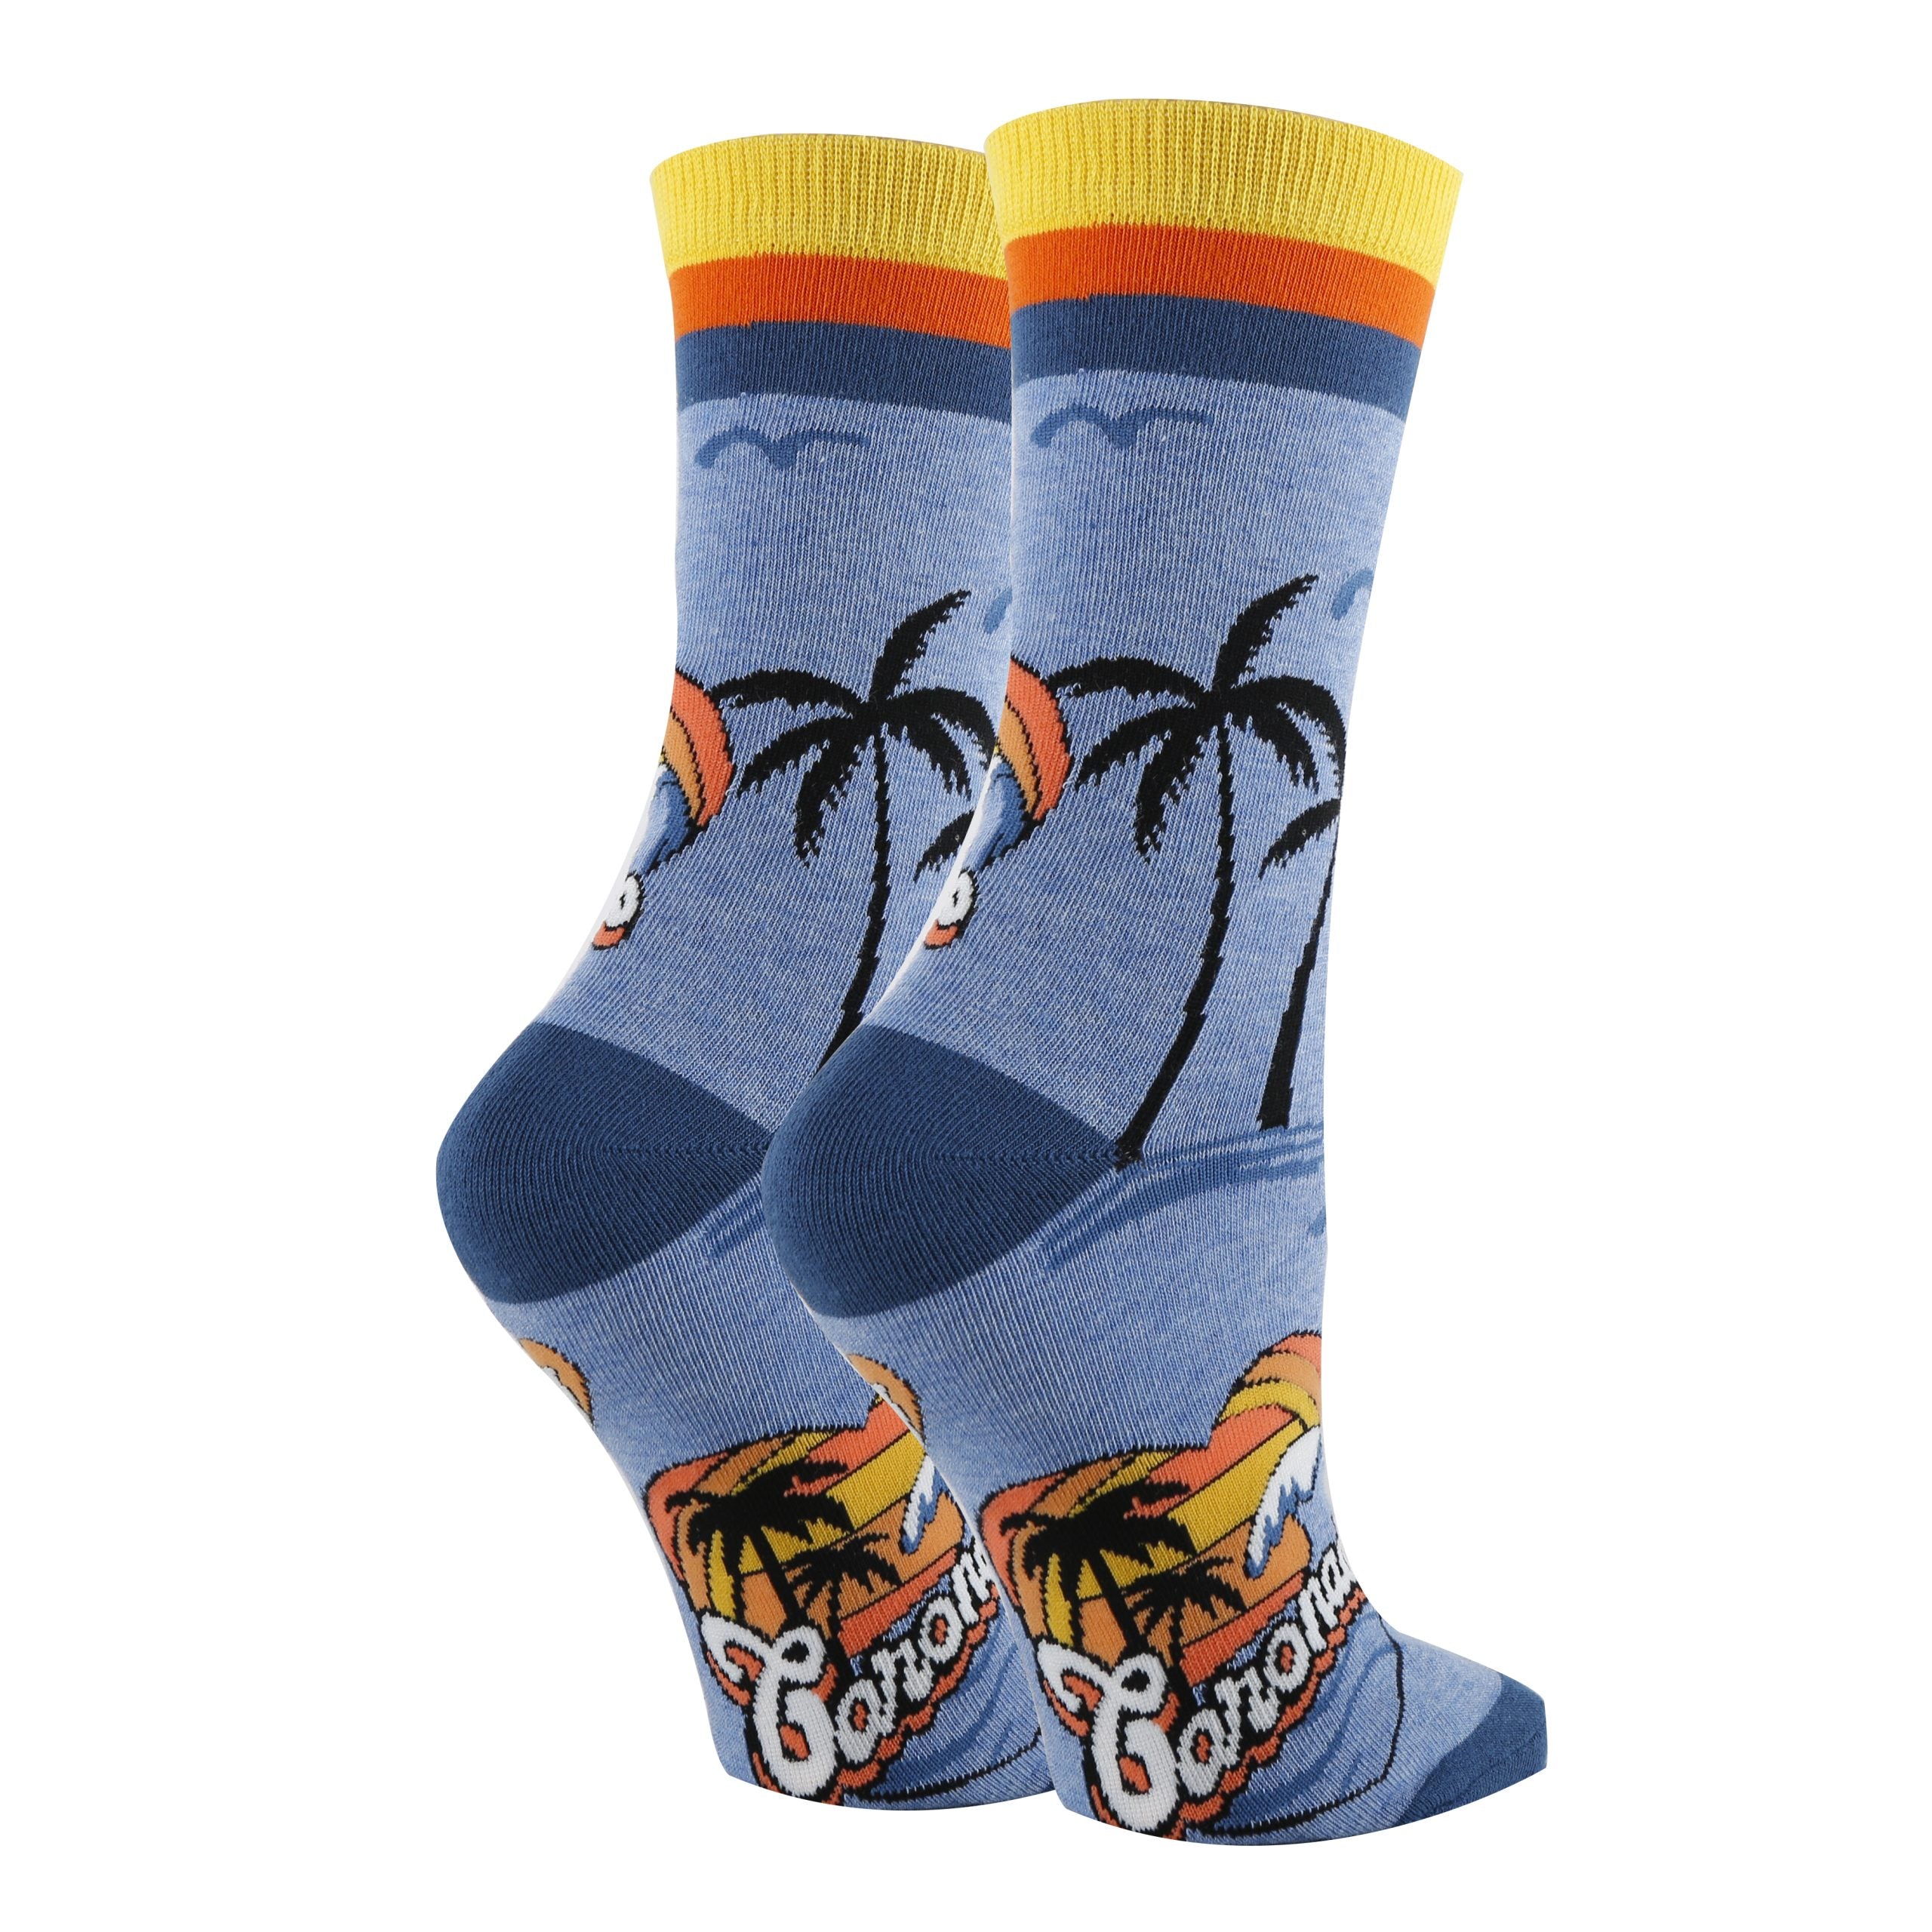 Coronado Socks - 0